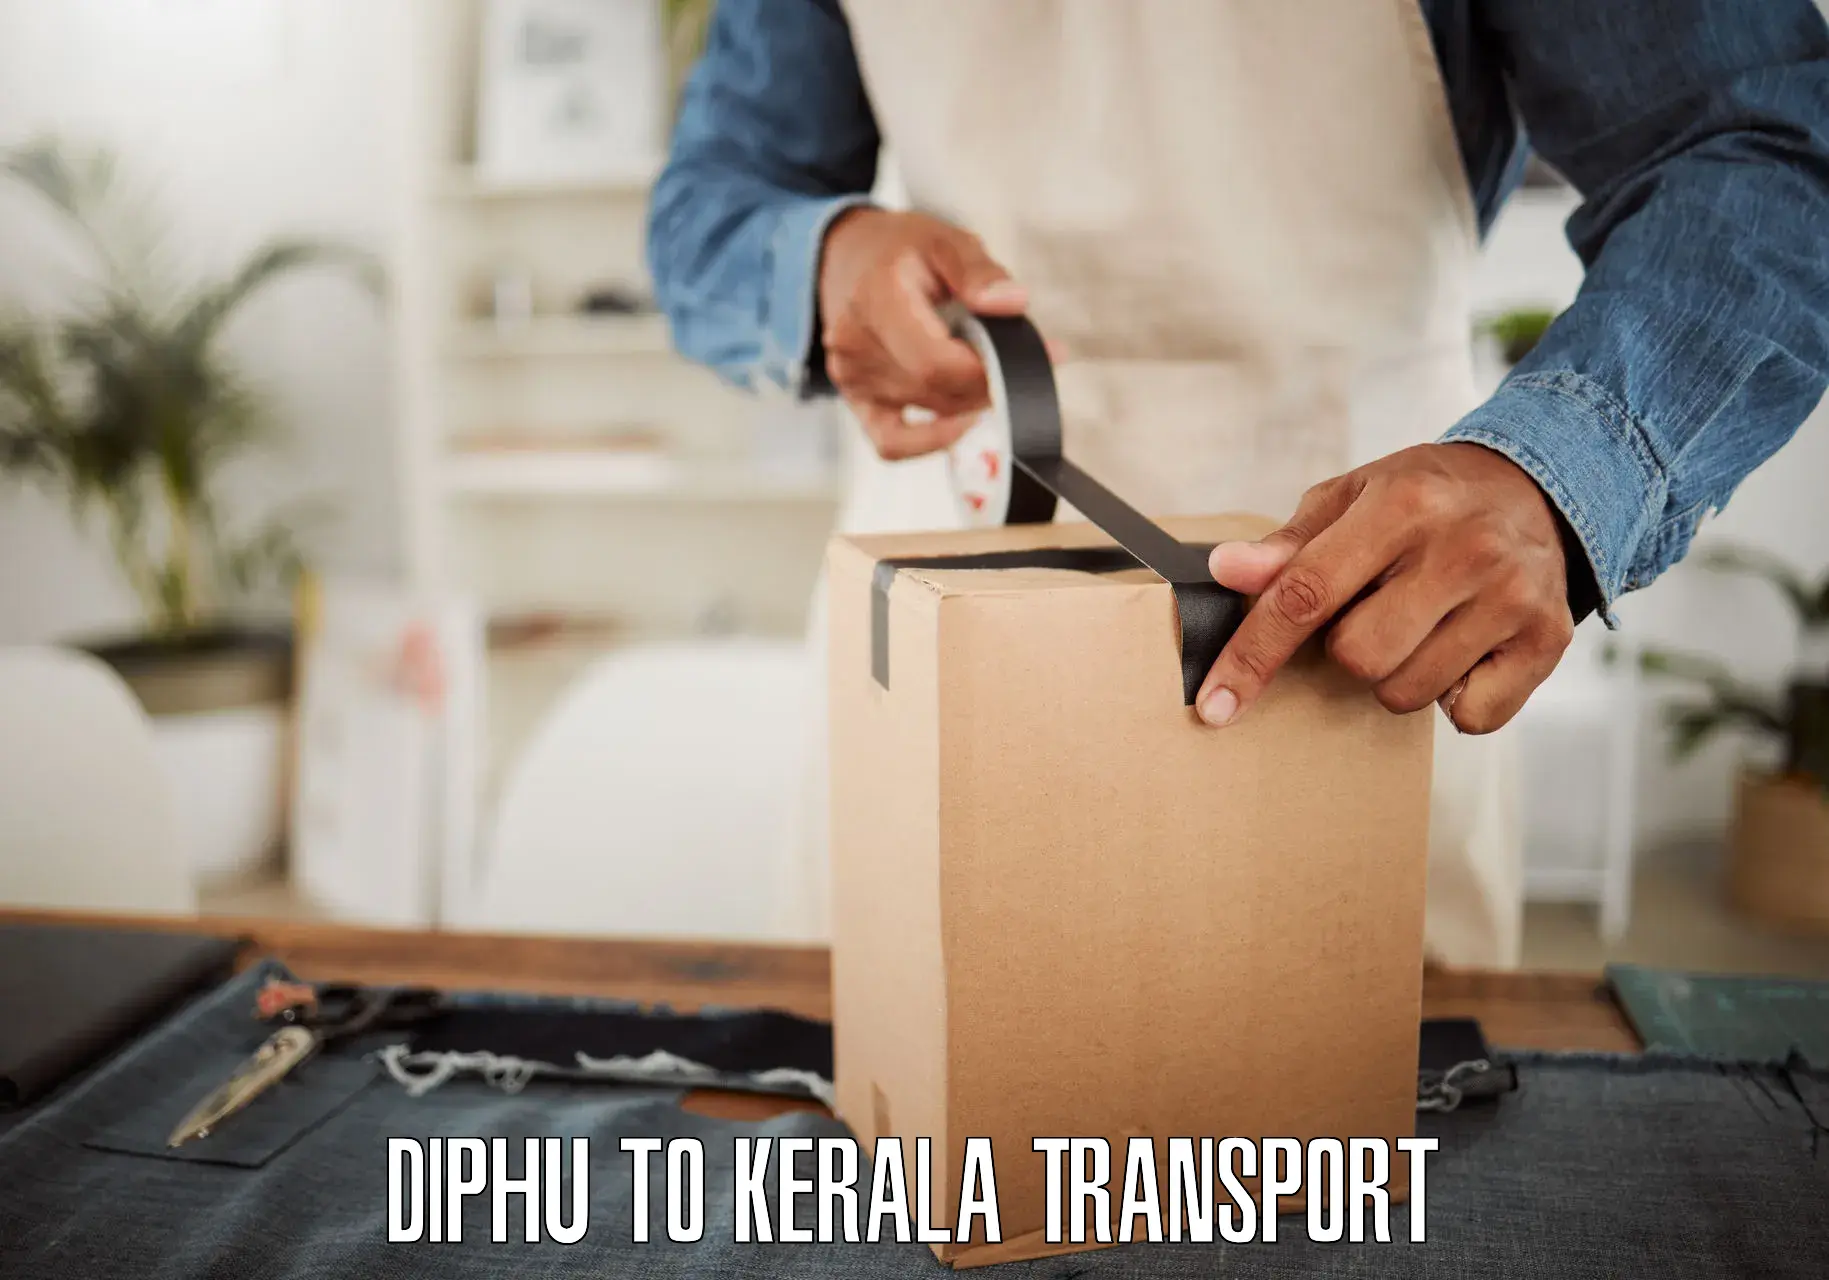 Furniture transport service Diphu to Kerala